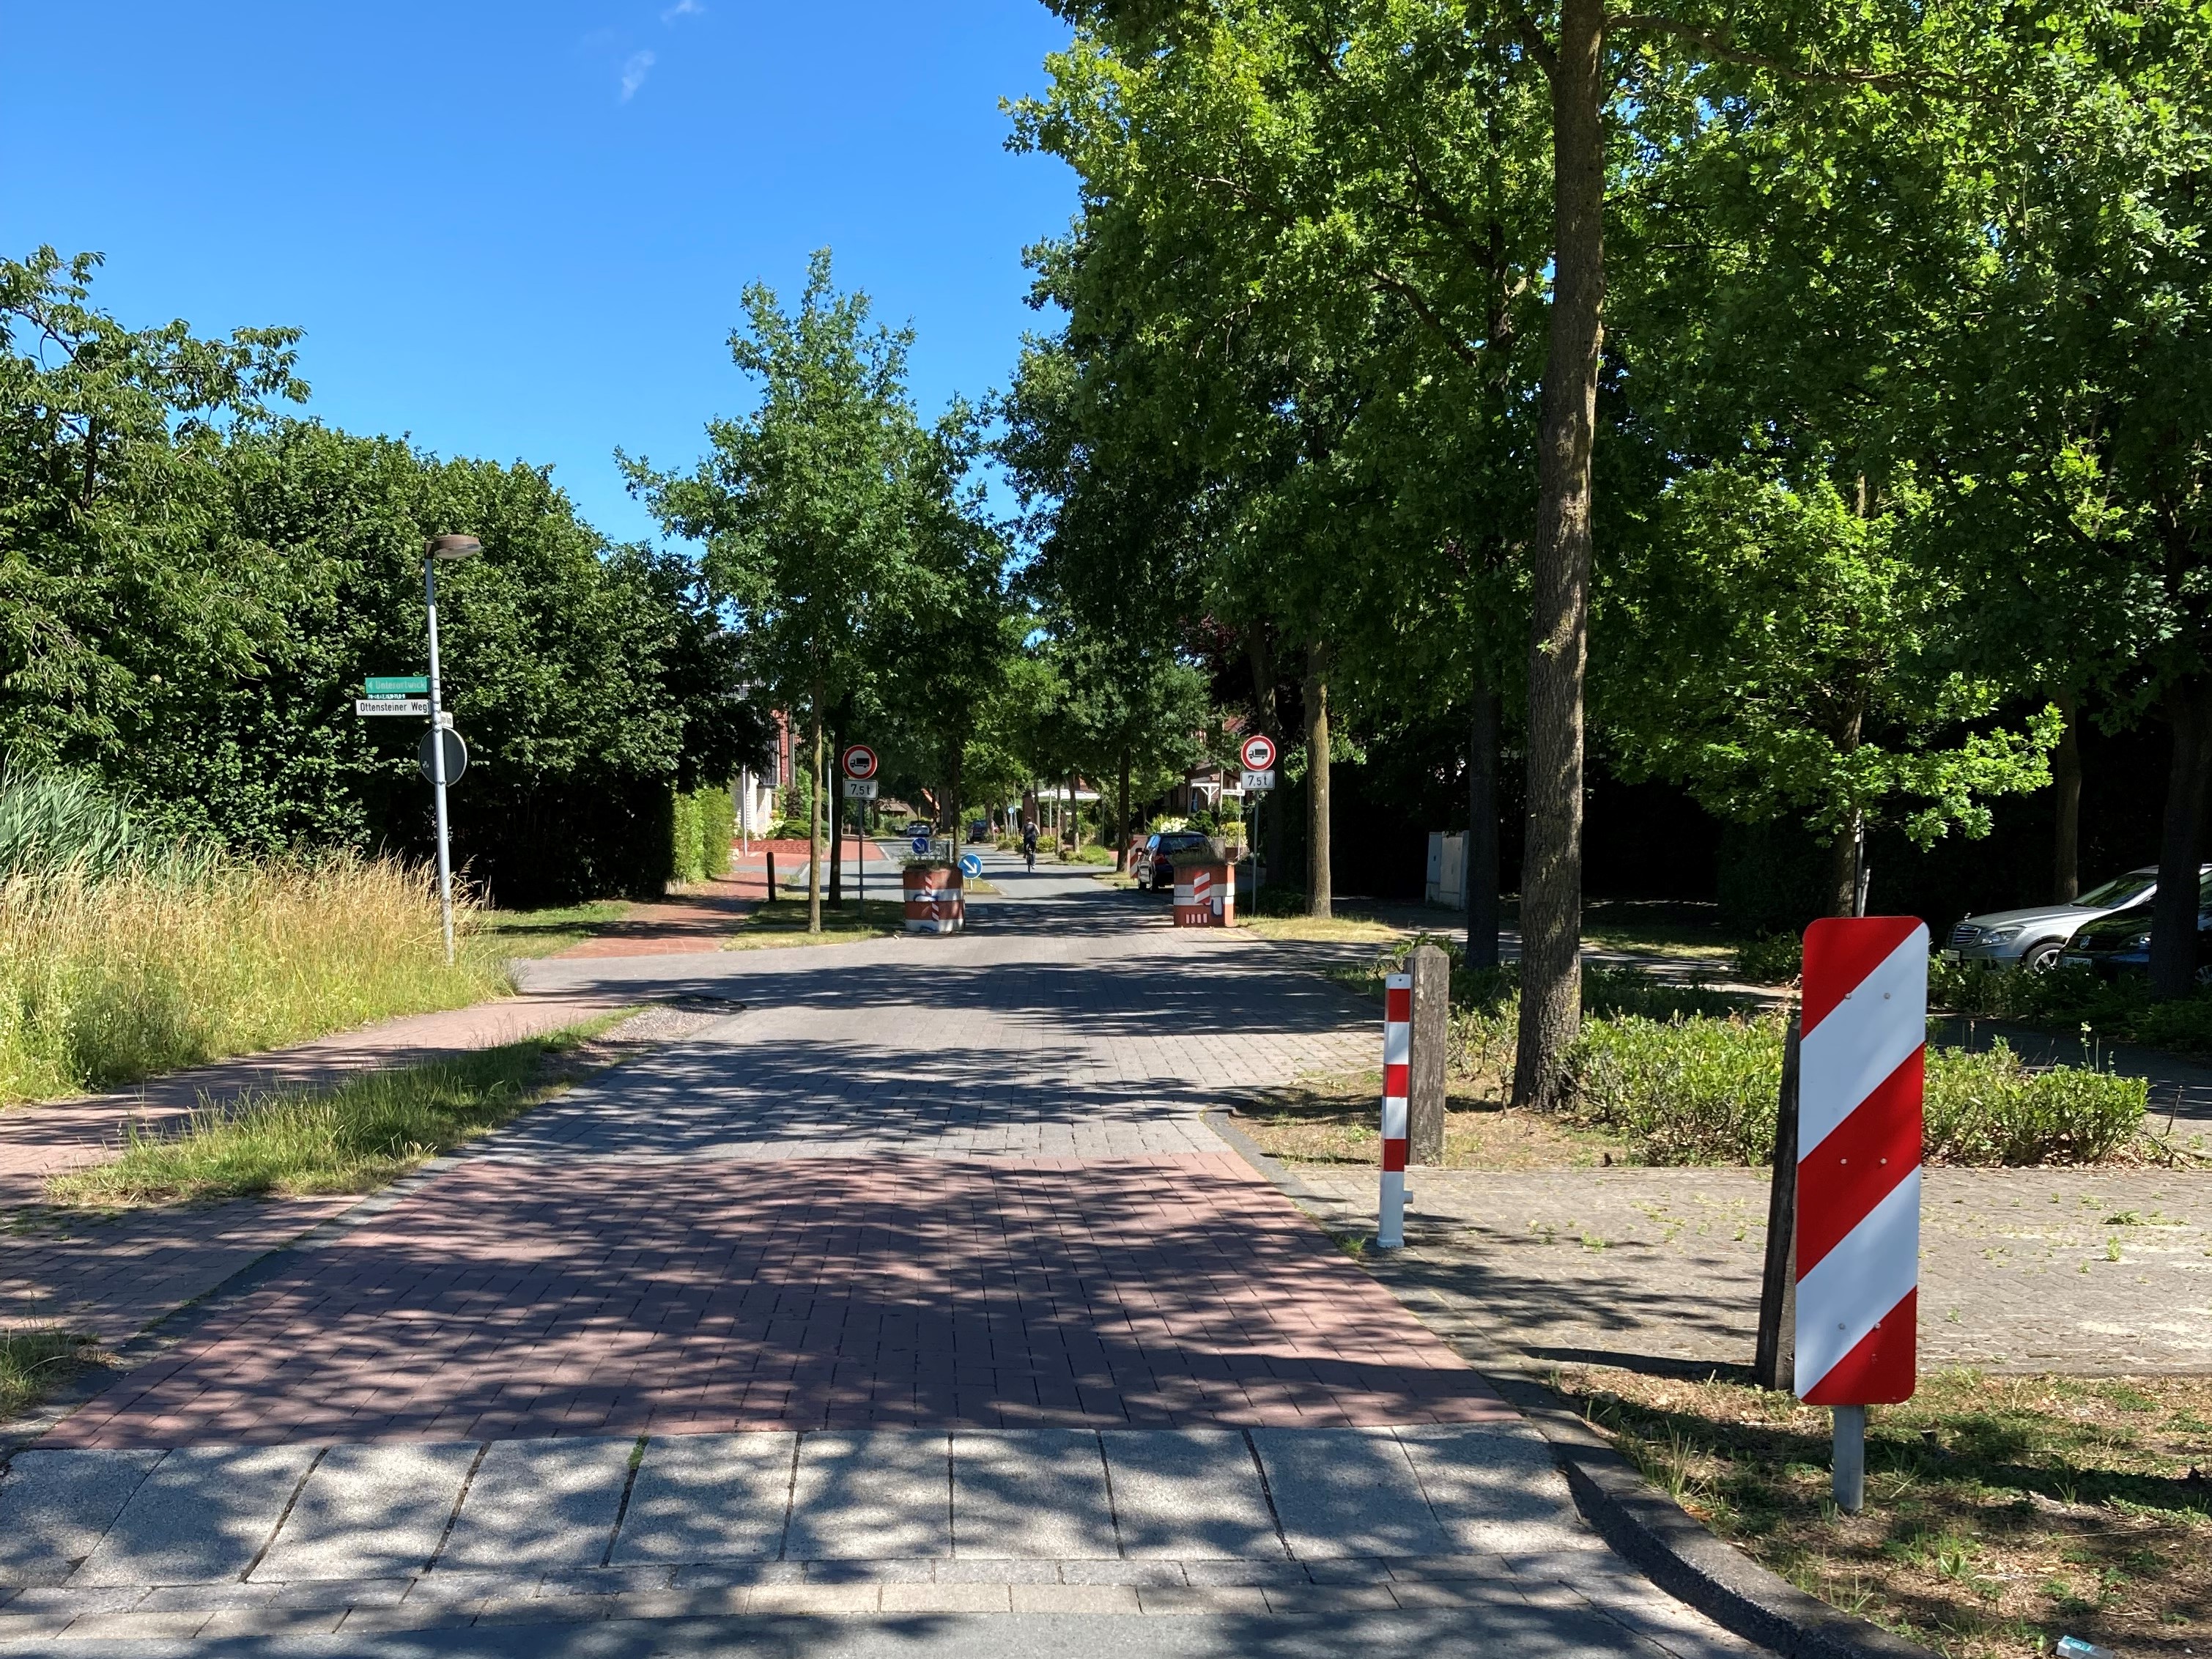 Ausbau zur Fahrradstraße - Vollsperrung im Bereich Langen Kamp / Ottensteiner Weg am 19. und 20. März